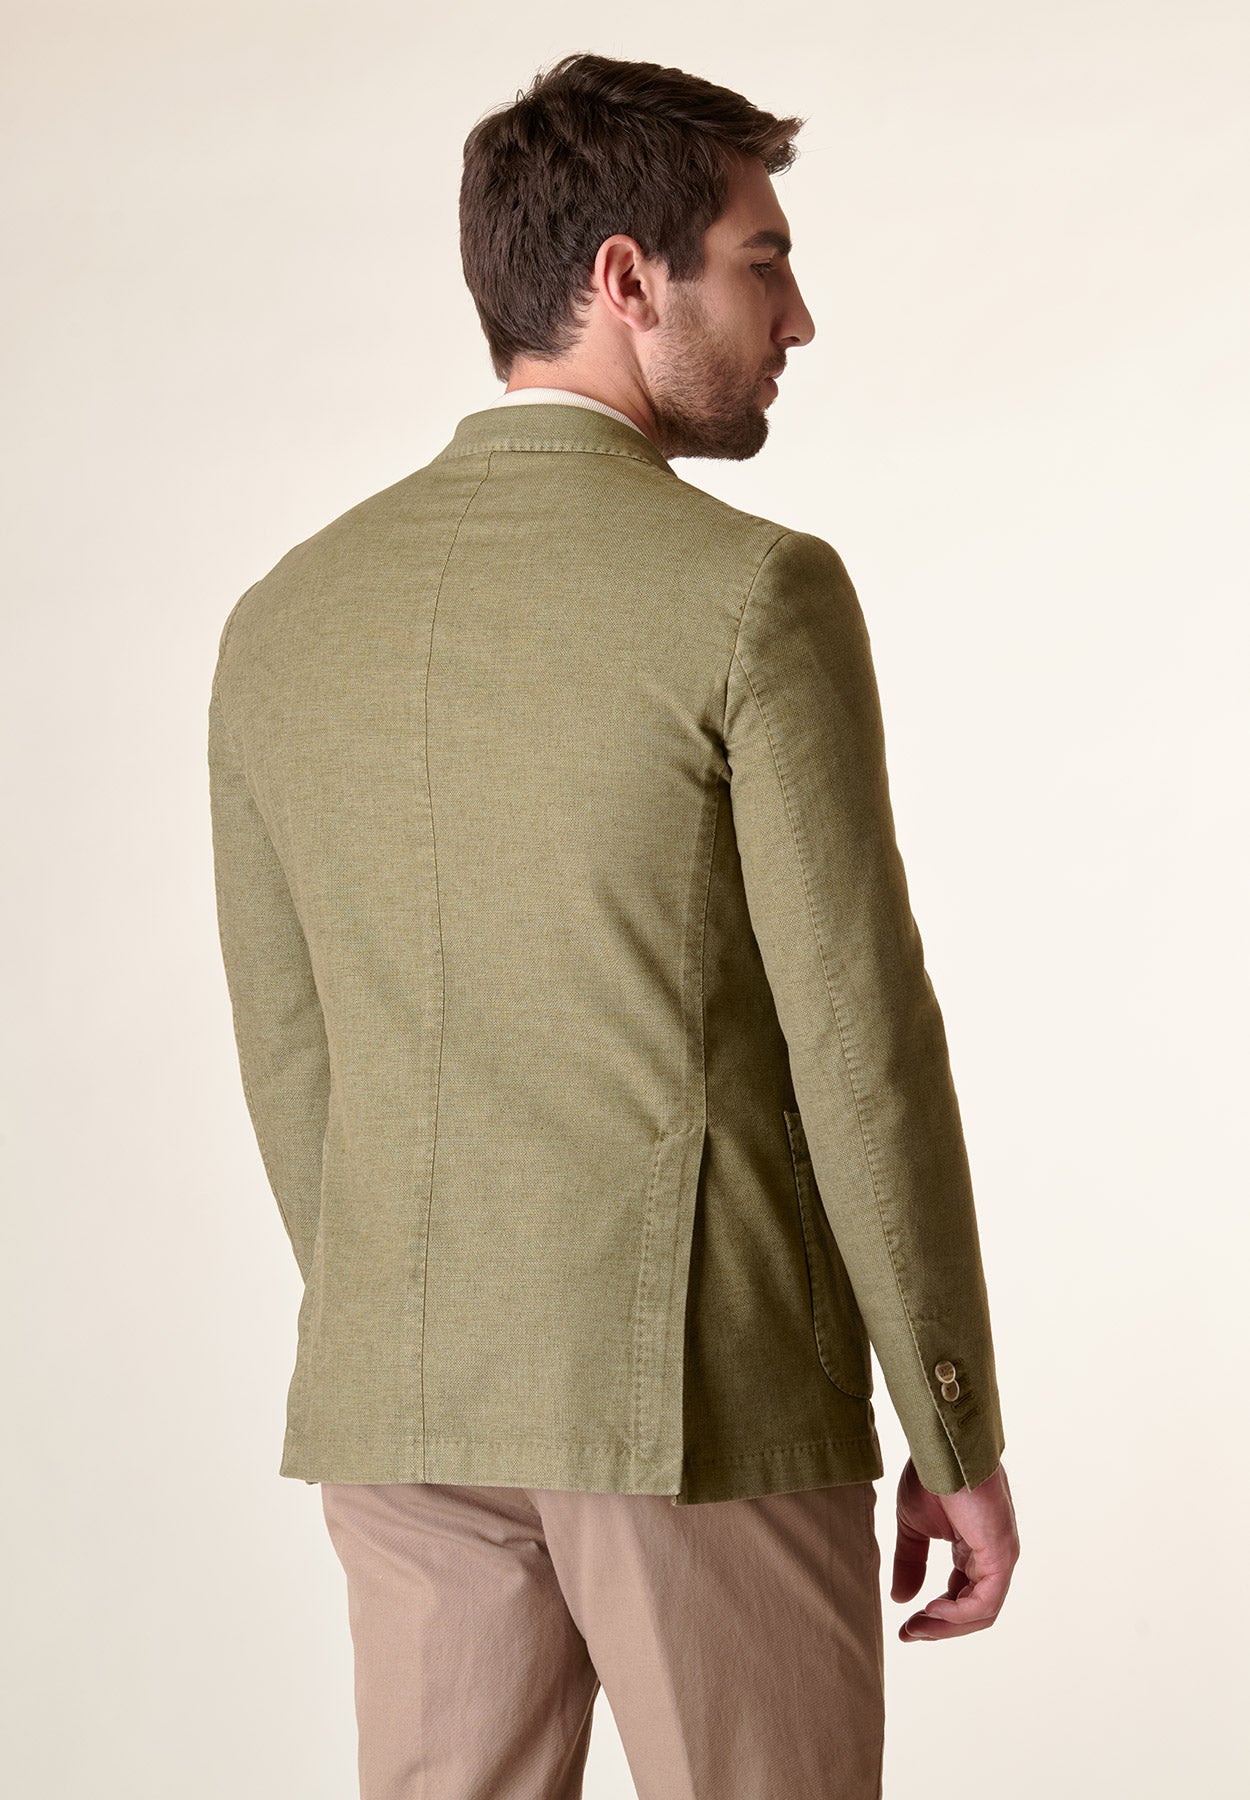 Maßgeschneiderte, stückgefärbte Jacke aus militärgrünem Baumwoll-Leinen